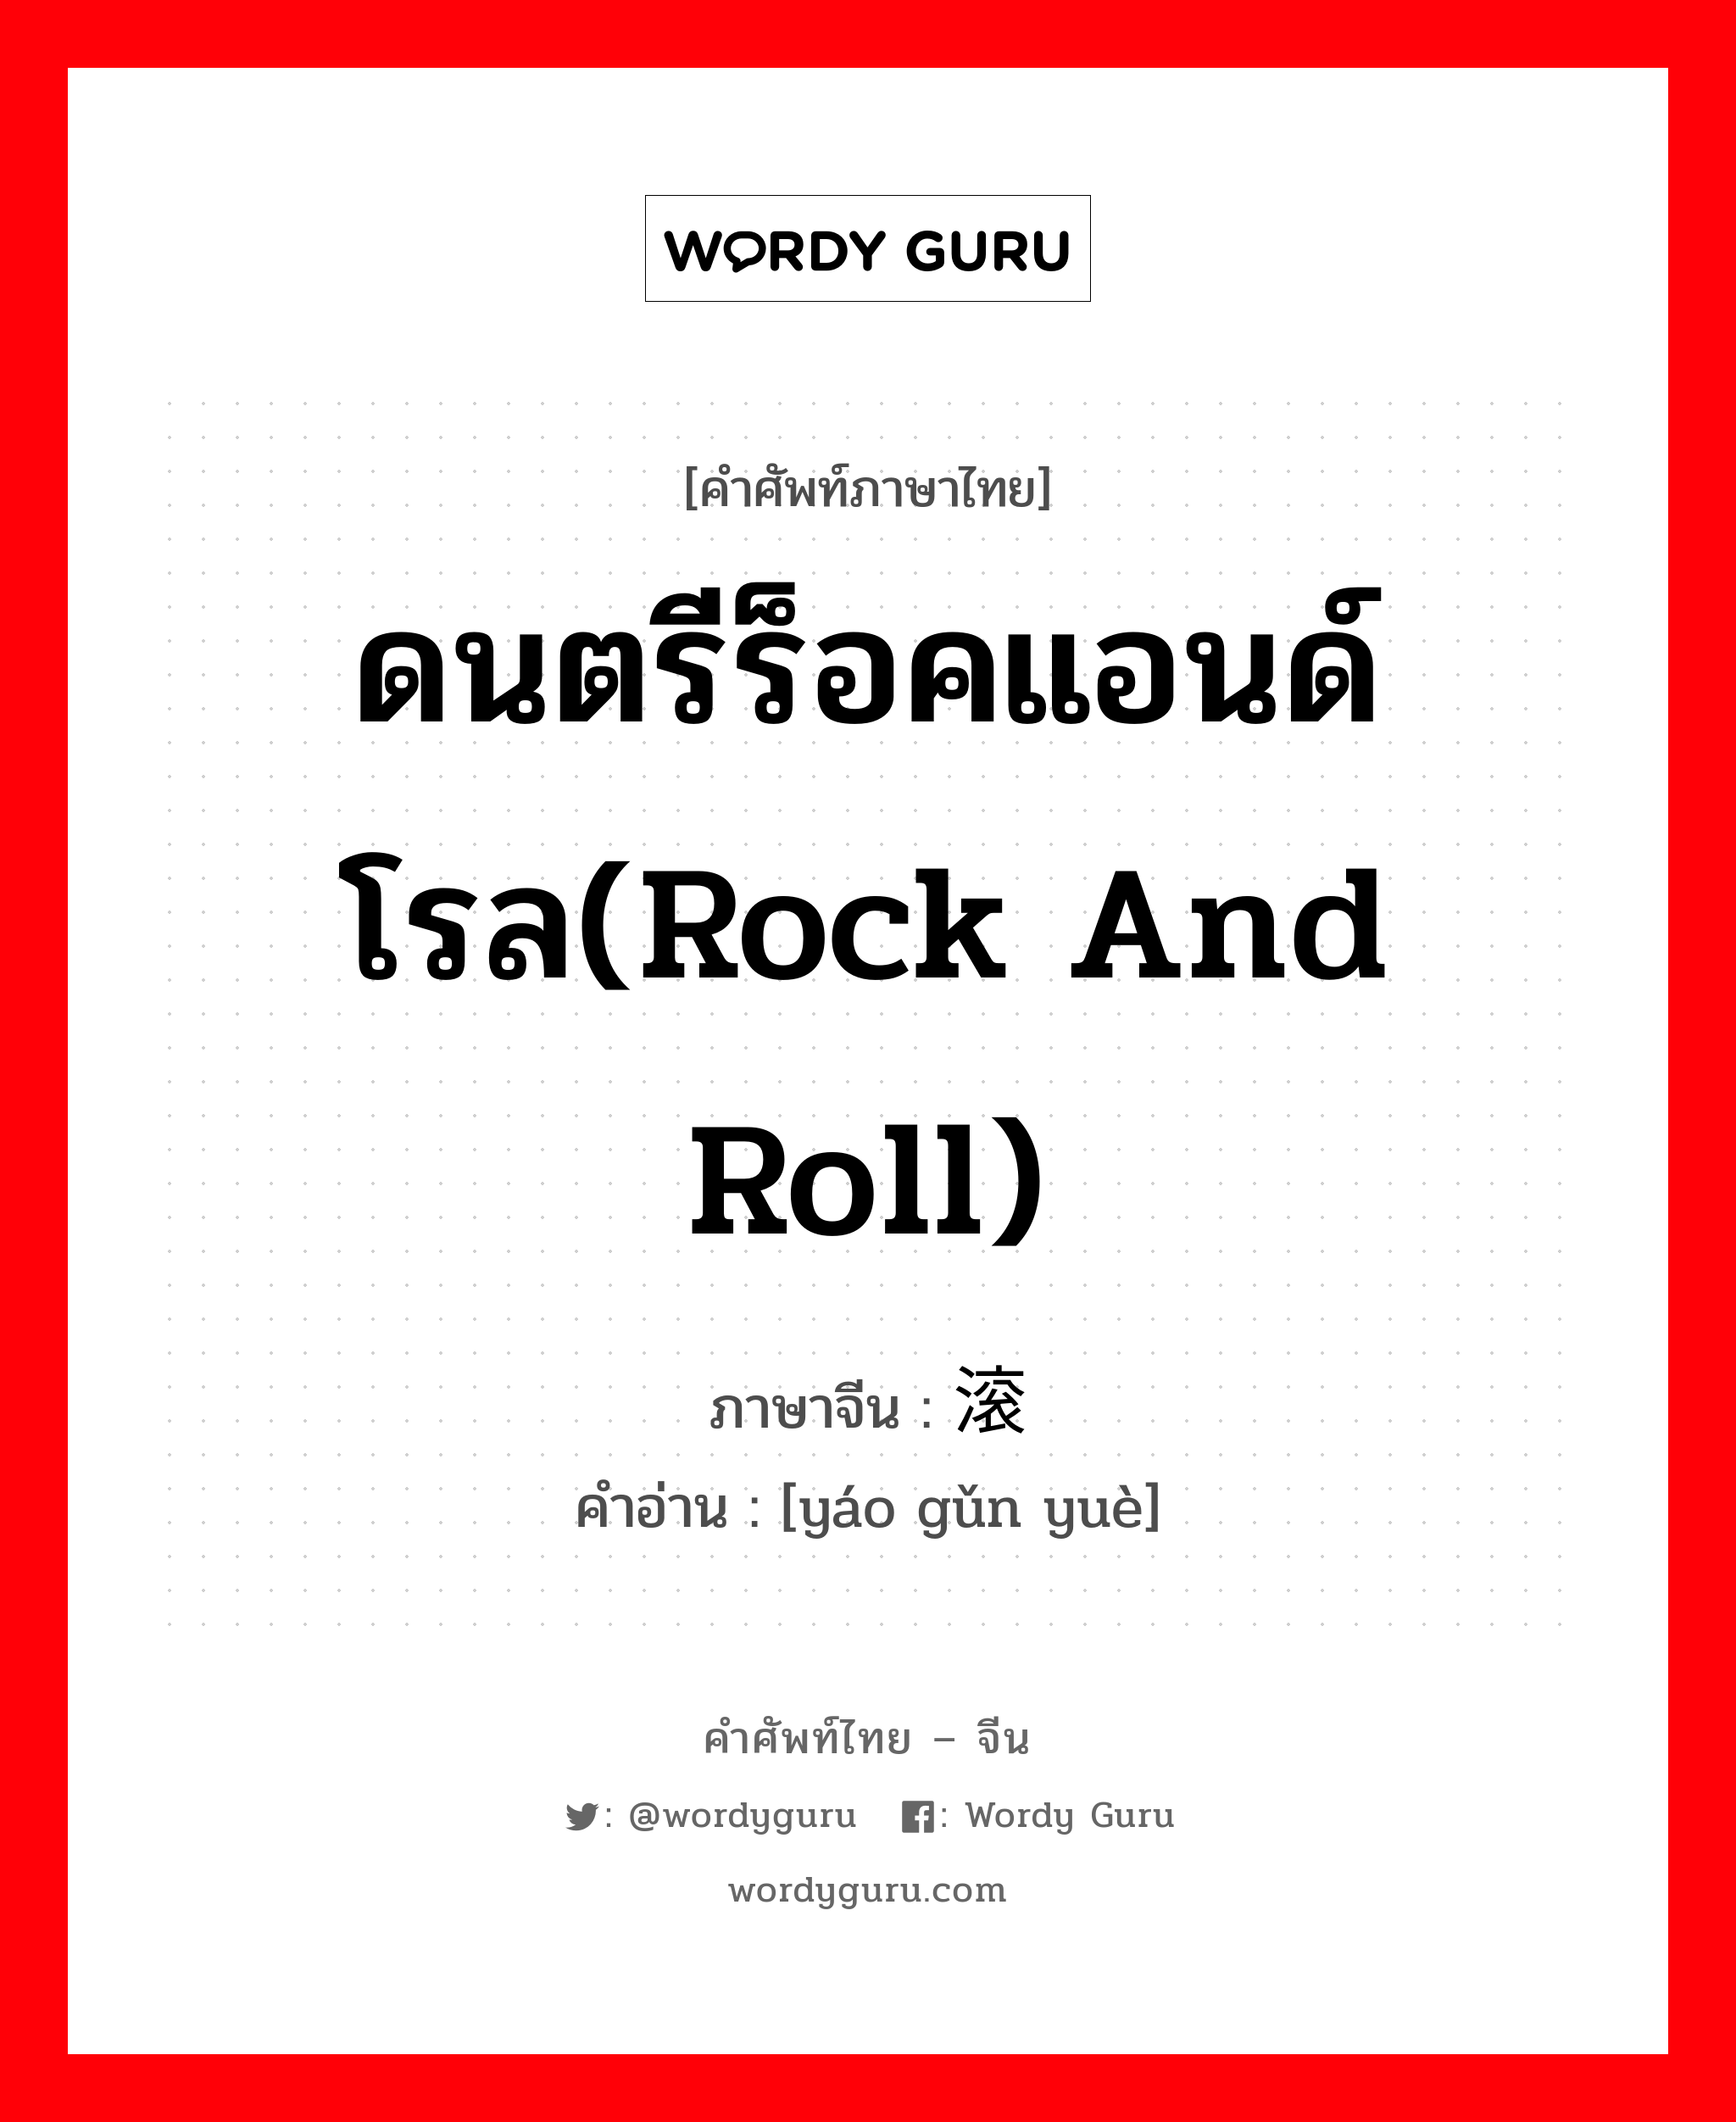 ดนตรีร็อคแอนด์โรล(Rock and Roll) ภาษาจีนคืออะไร, คำศัพท์ภาษาไทย - จีน ดนตรีร็อคแอนด์โรล(Rock and Roll) ภาษาจีน 摇滚乐 คำอ่าน [yáo gǔn yuè]